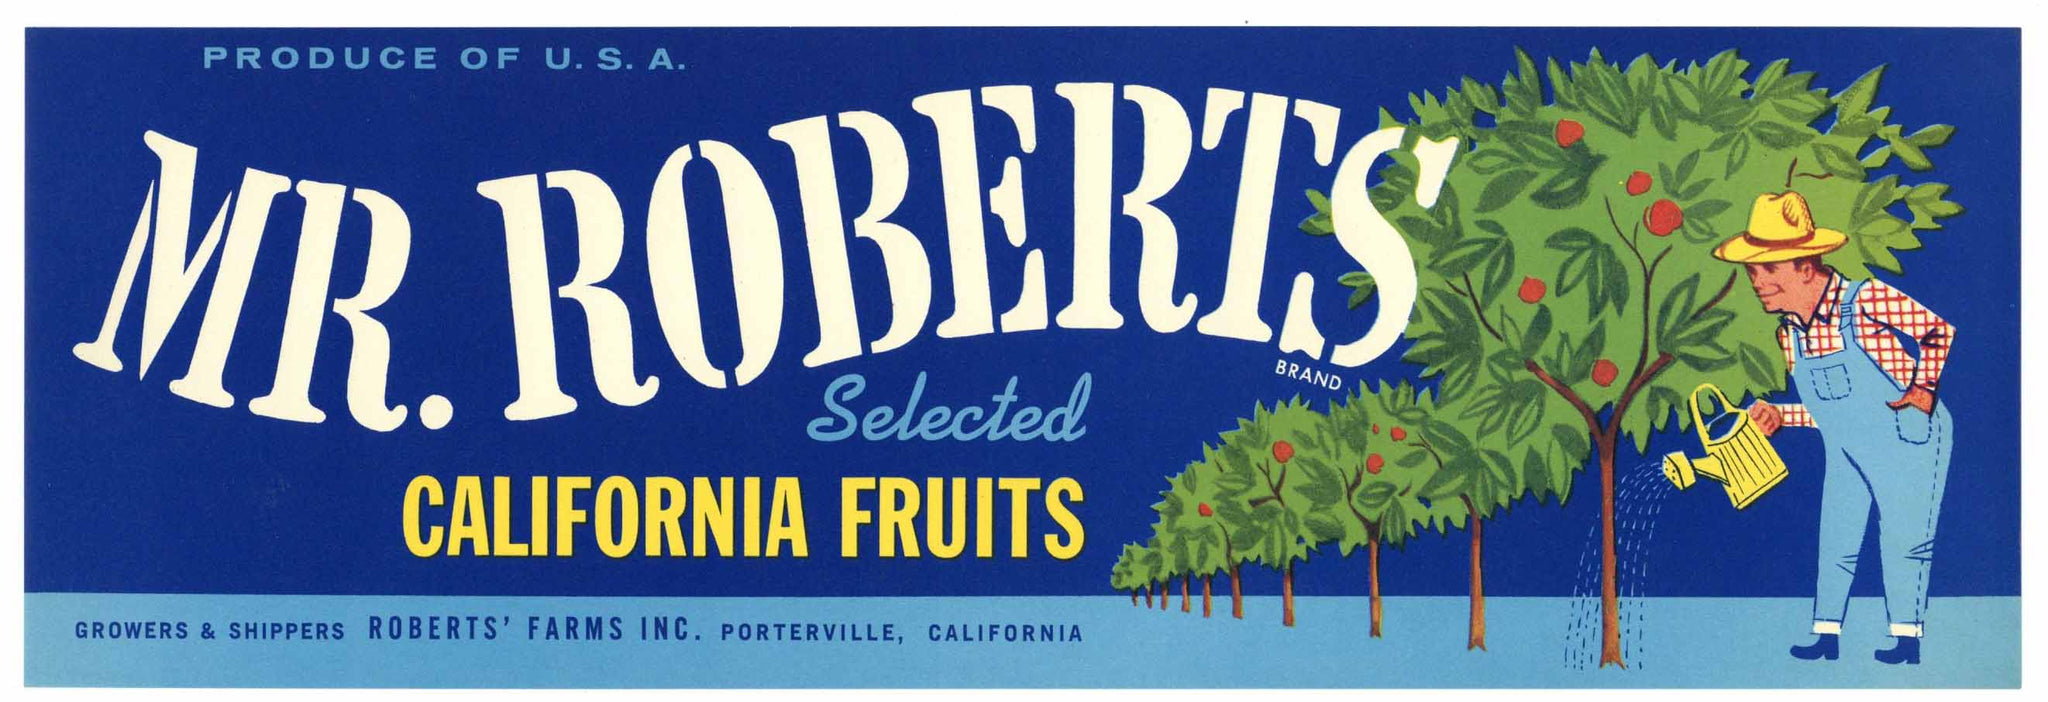 Mr. Roberts Brand Vintage Porterville Fruit Crate Label